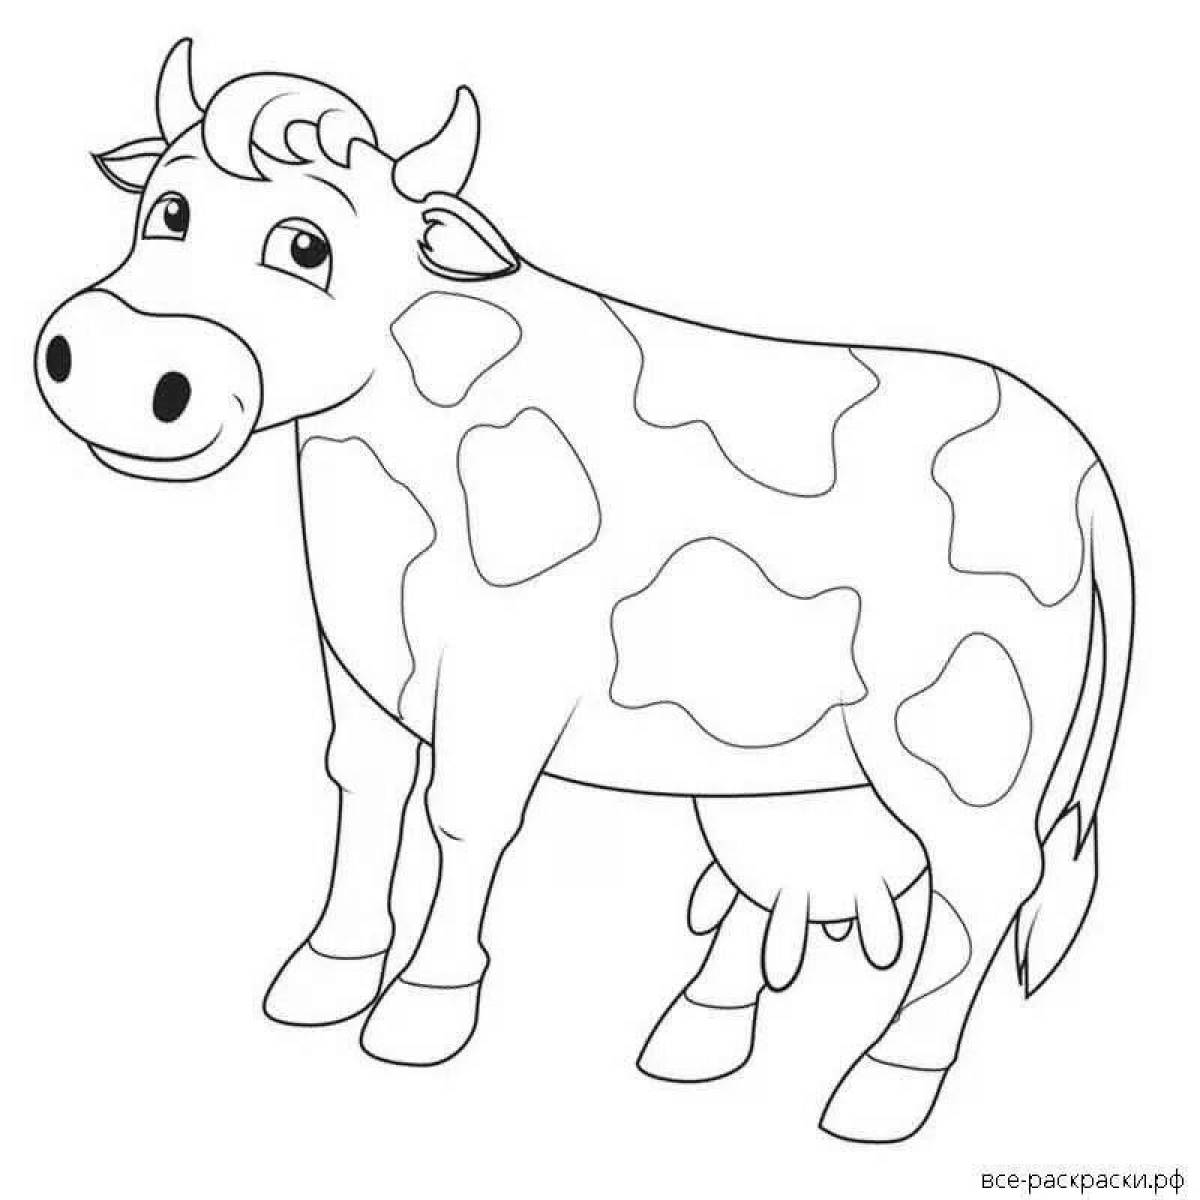 Как нарисовать оранжевую корову. Раскраска корова. Корова раскраска для детей. Корова раскраска для малышей. Трафарет коровы для рисования.